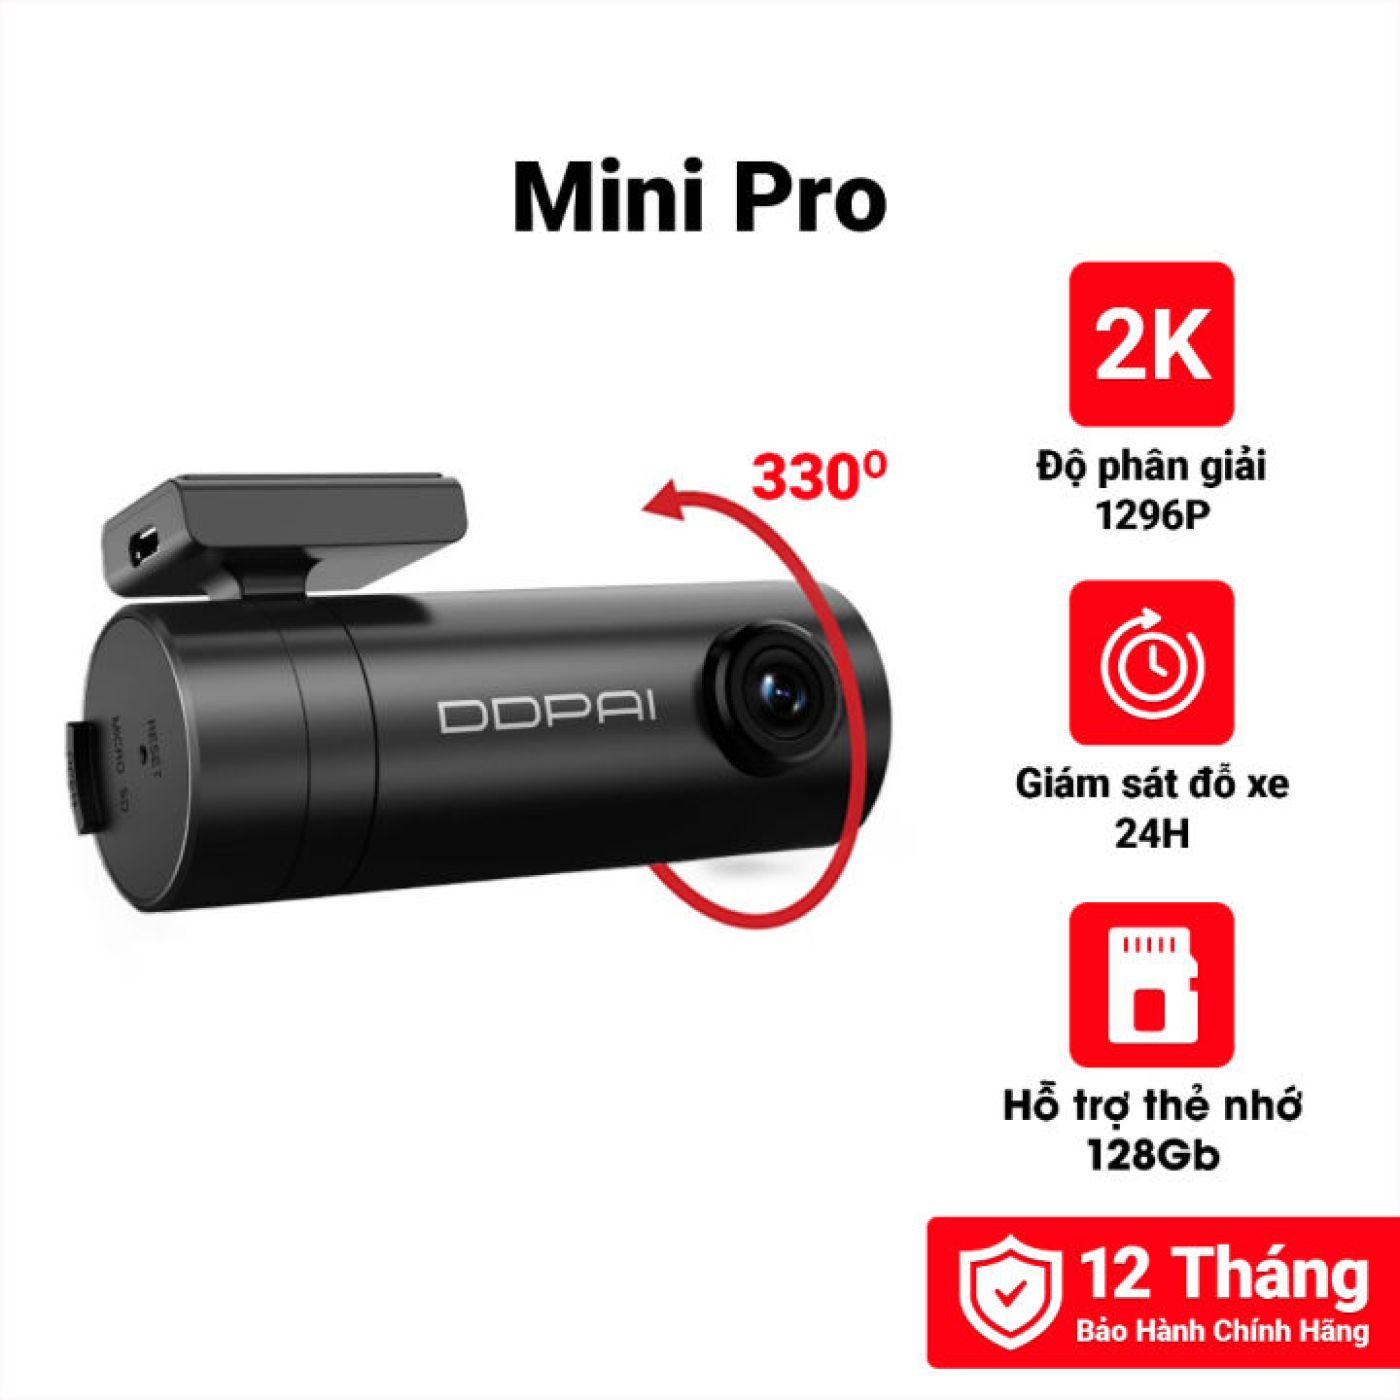 Camera hành trình Ddpai Mini Pro 2K - Phiên bản quốc tế